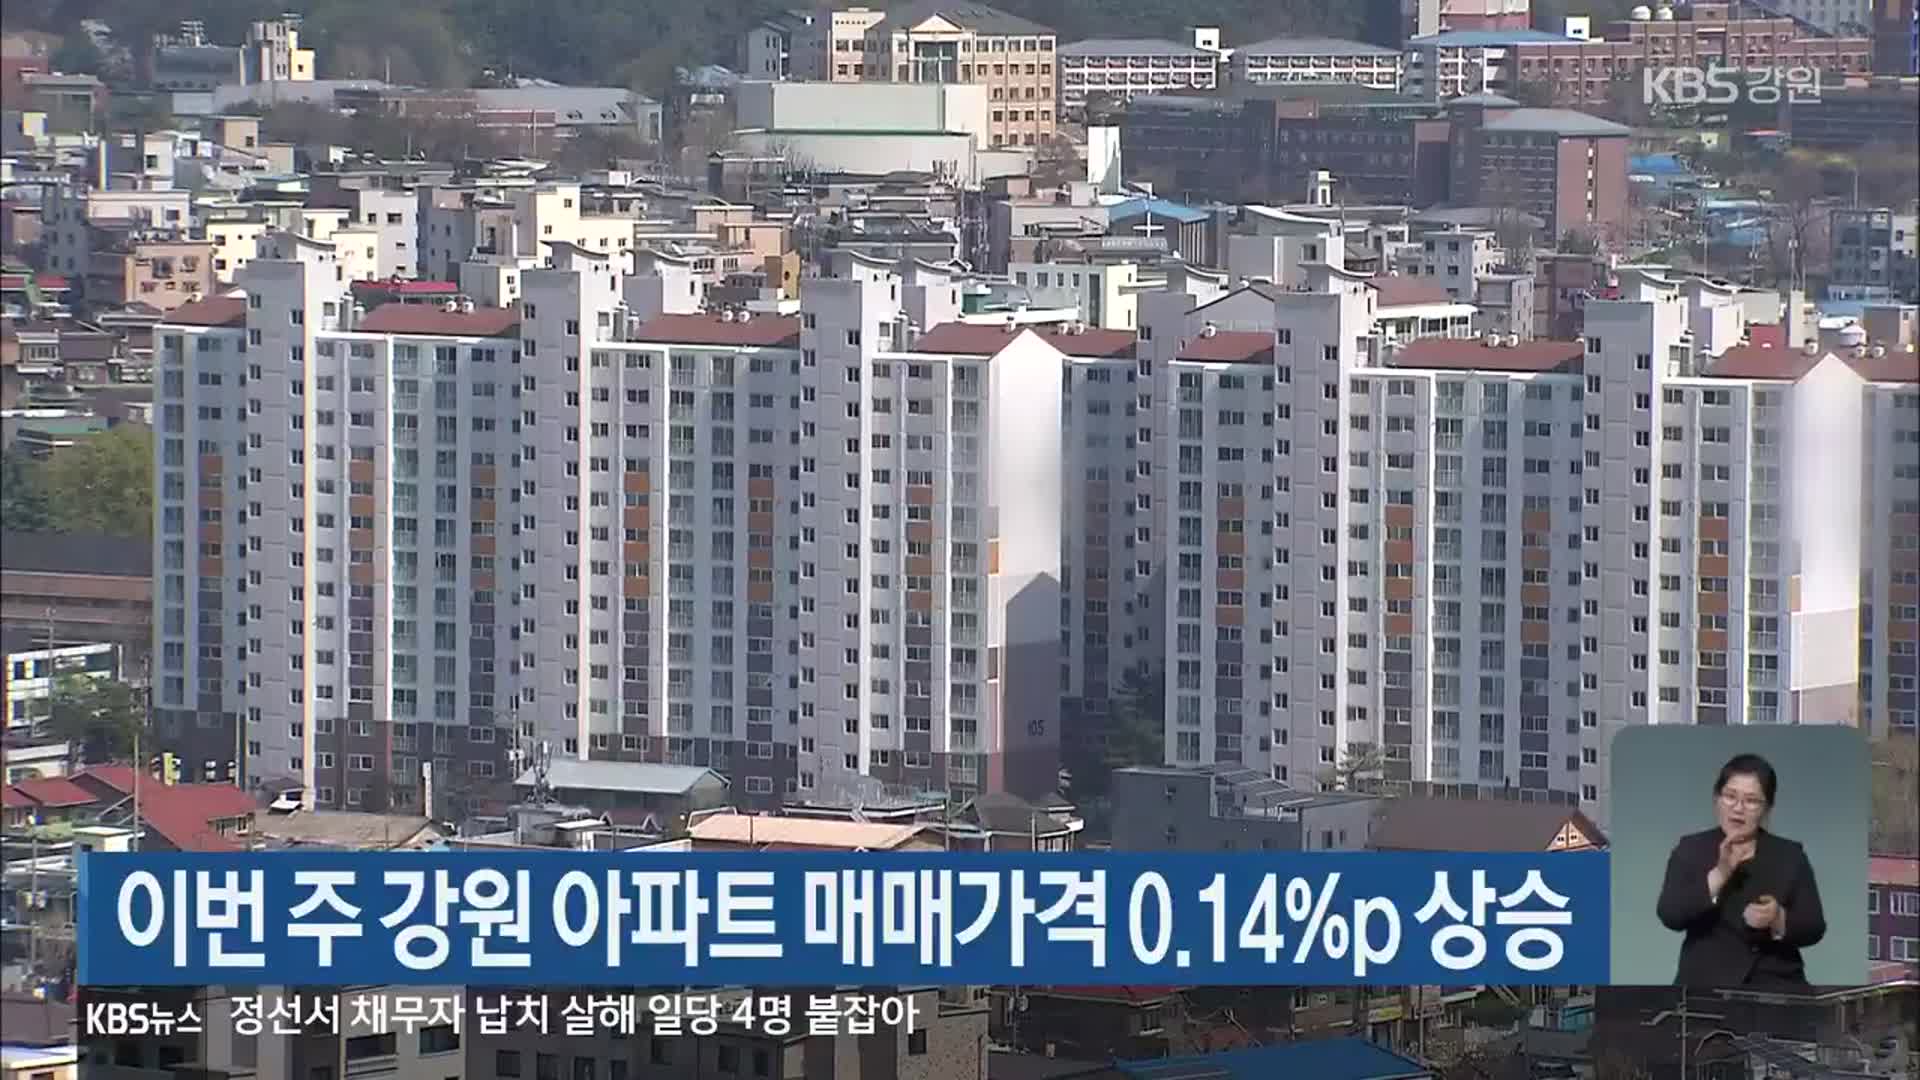 이번 주 강원 아파트 매매가격 0.14%p 상승